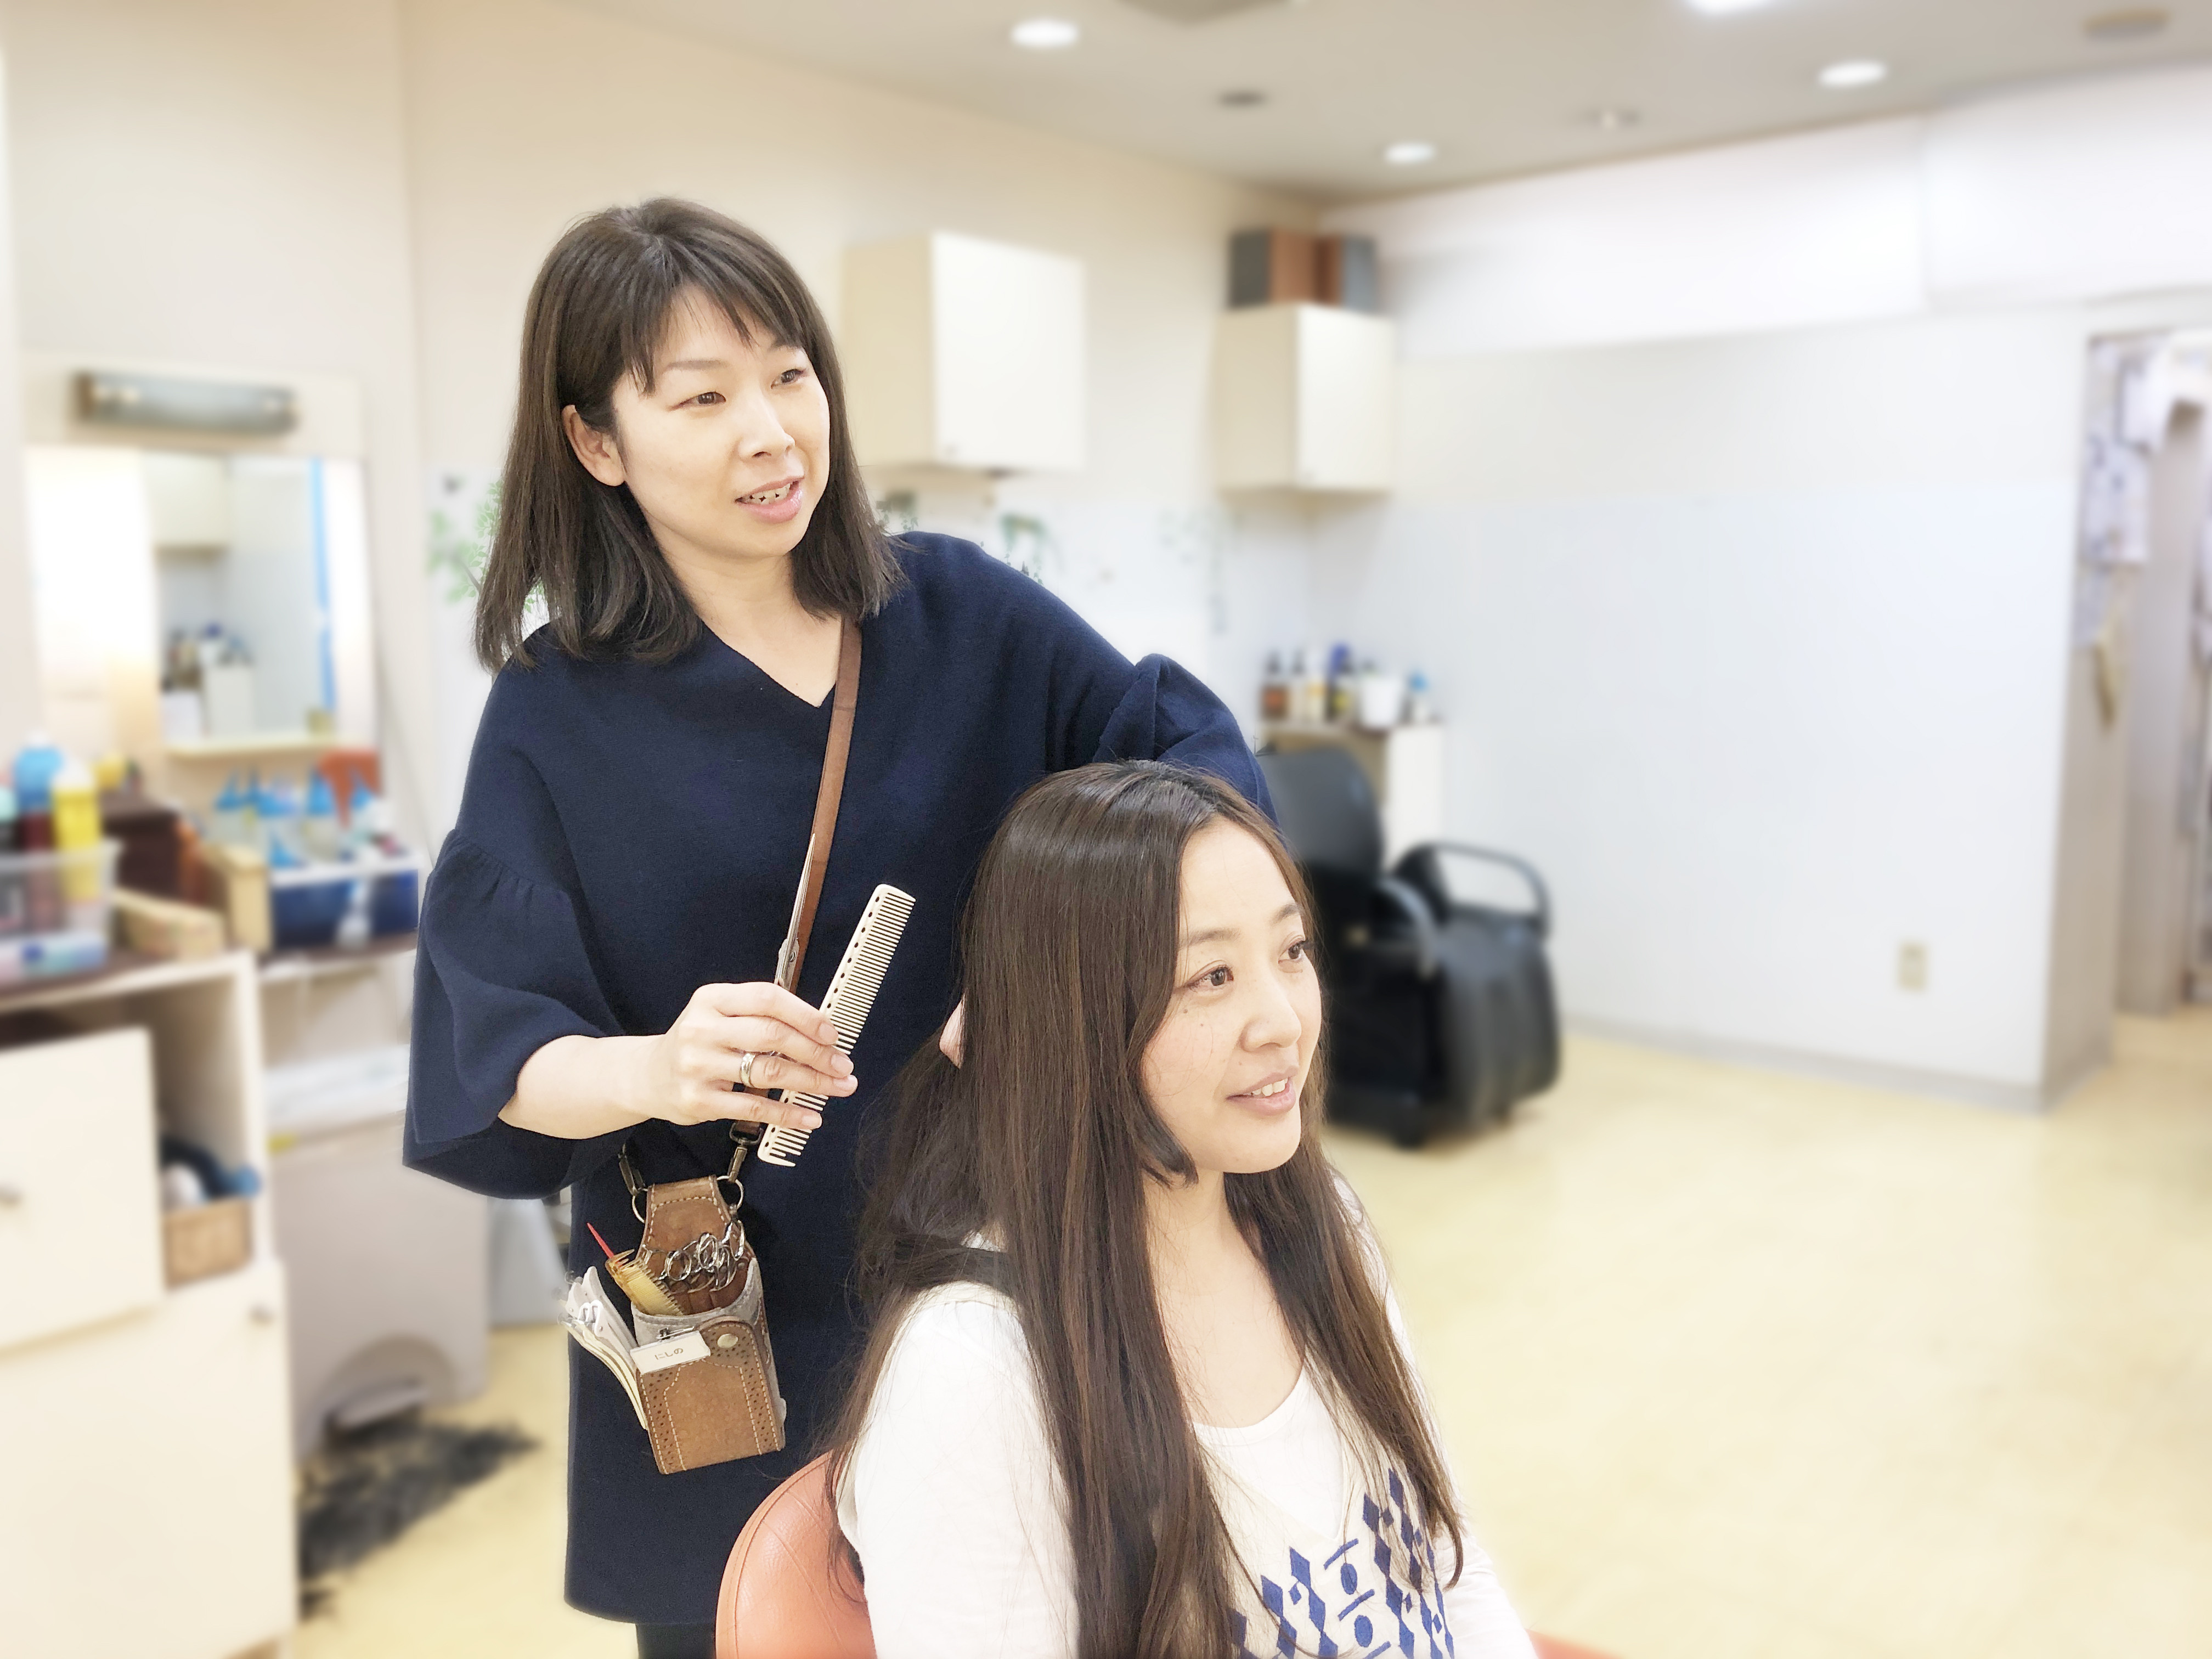 美容師求人 美容師スタイリスト パート アルバイト 雑色 東京 ヘアーサロン シーズン 美容師の求人 転職 募集 美容師求人 Com 美容師 美容室の求人多数掲載